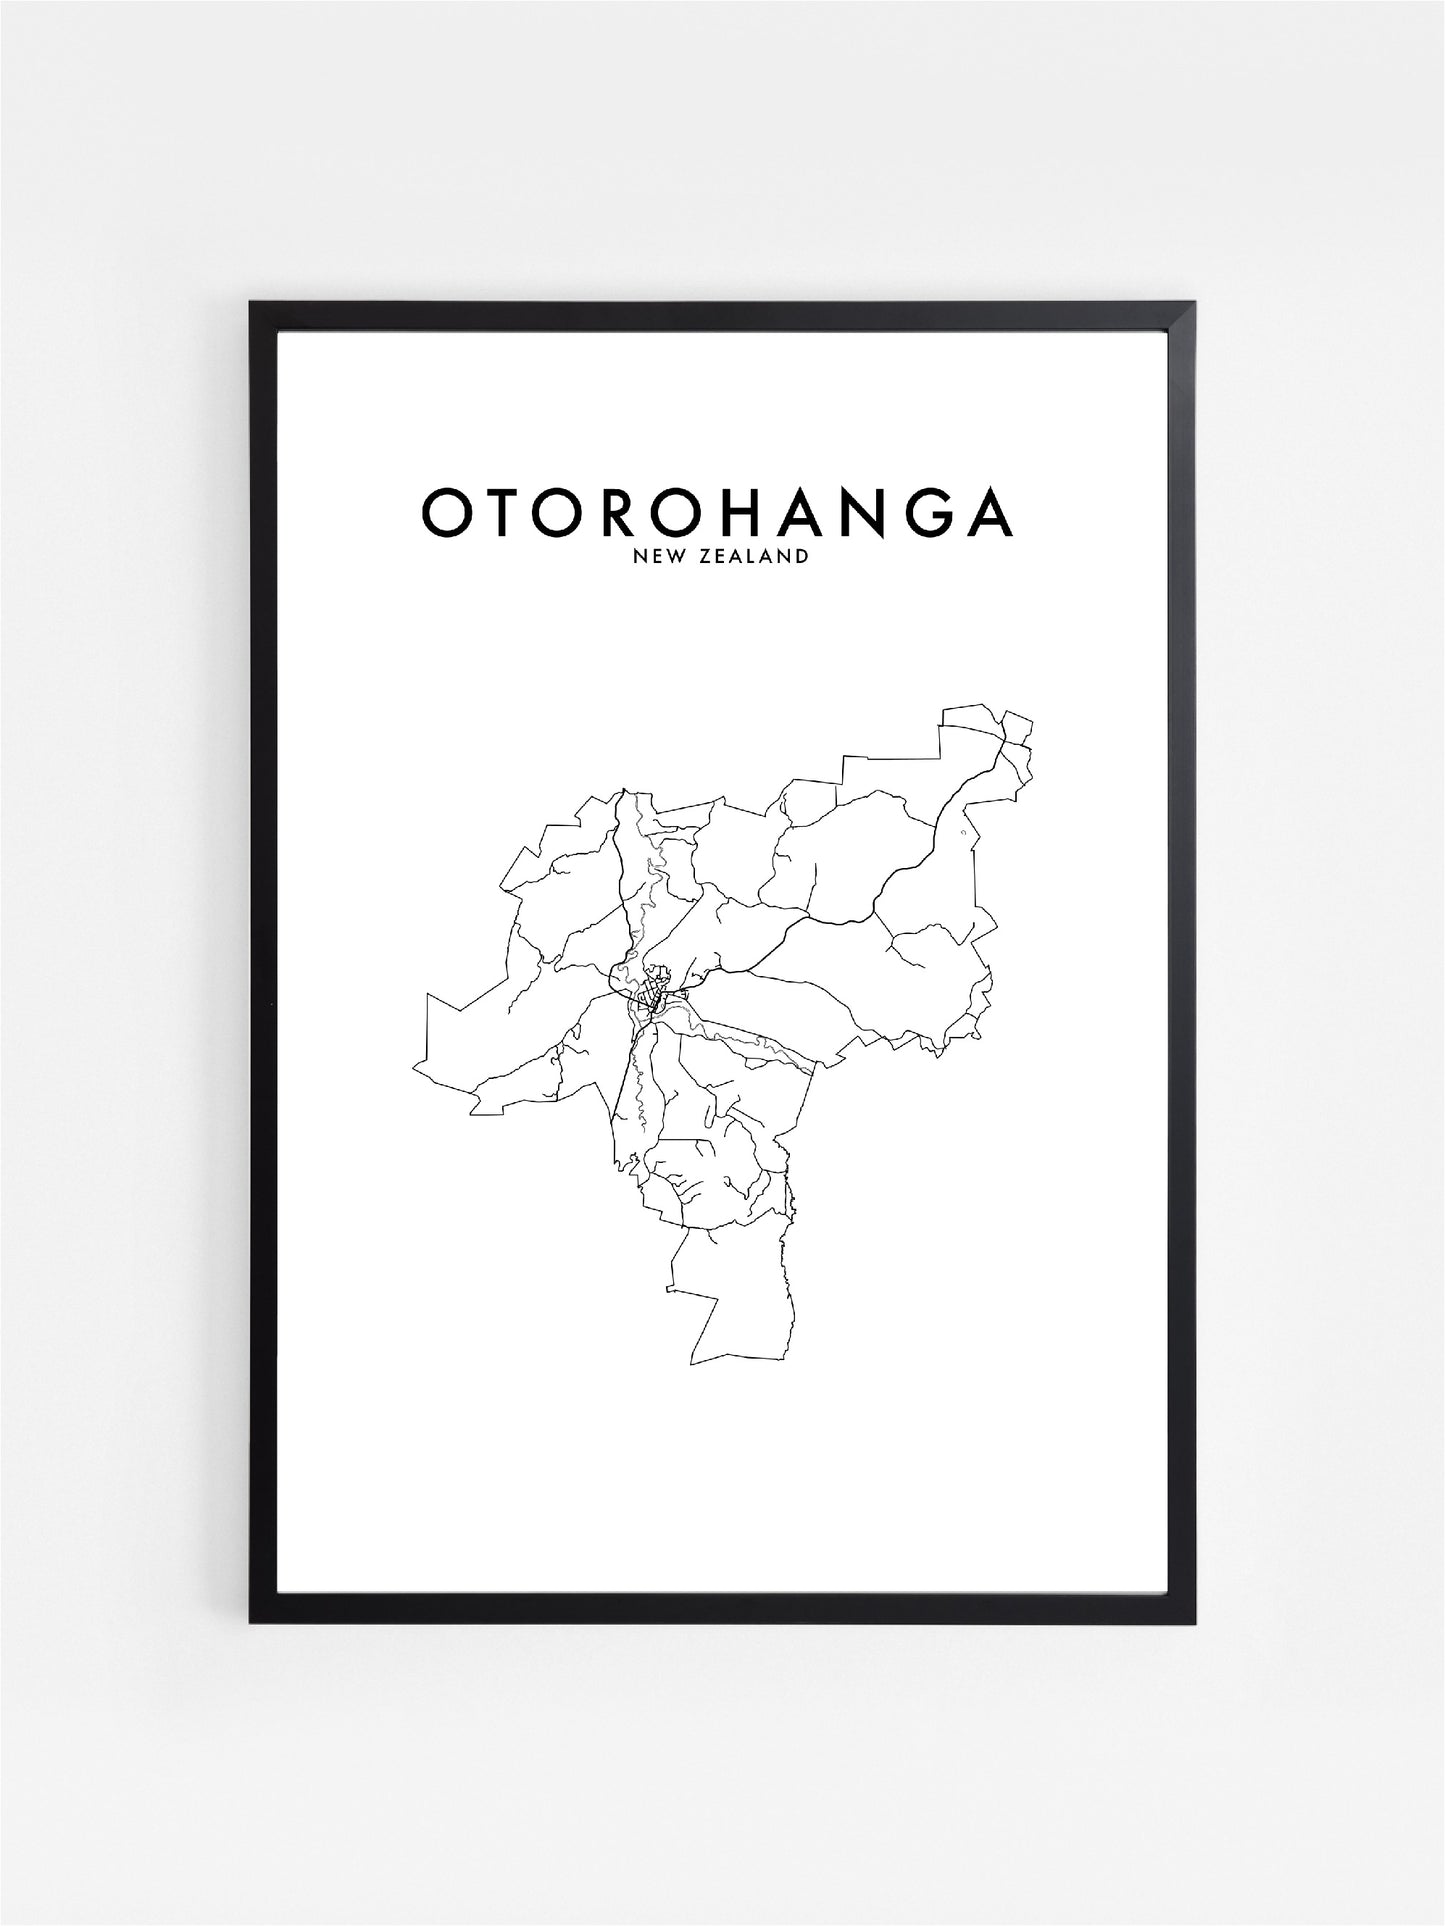 OTOROHANGA, NZ HOMETOWN PRINT